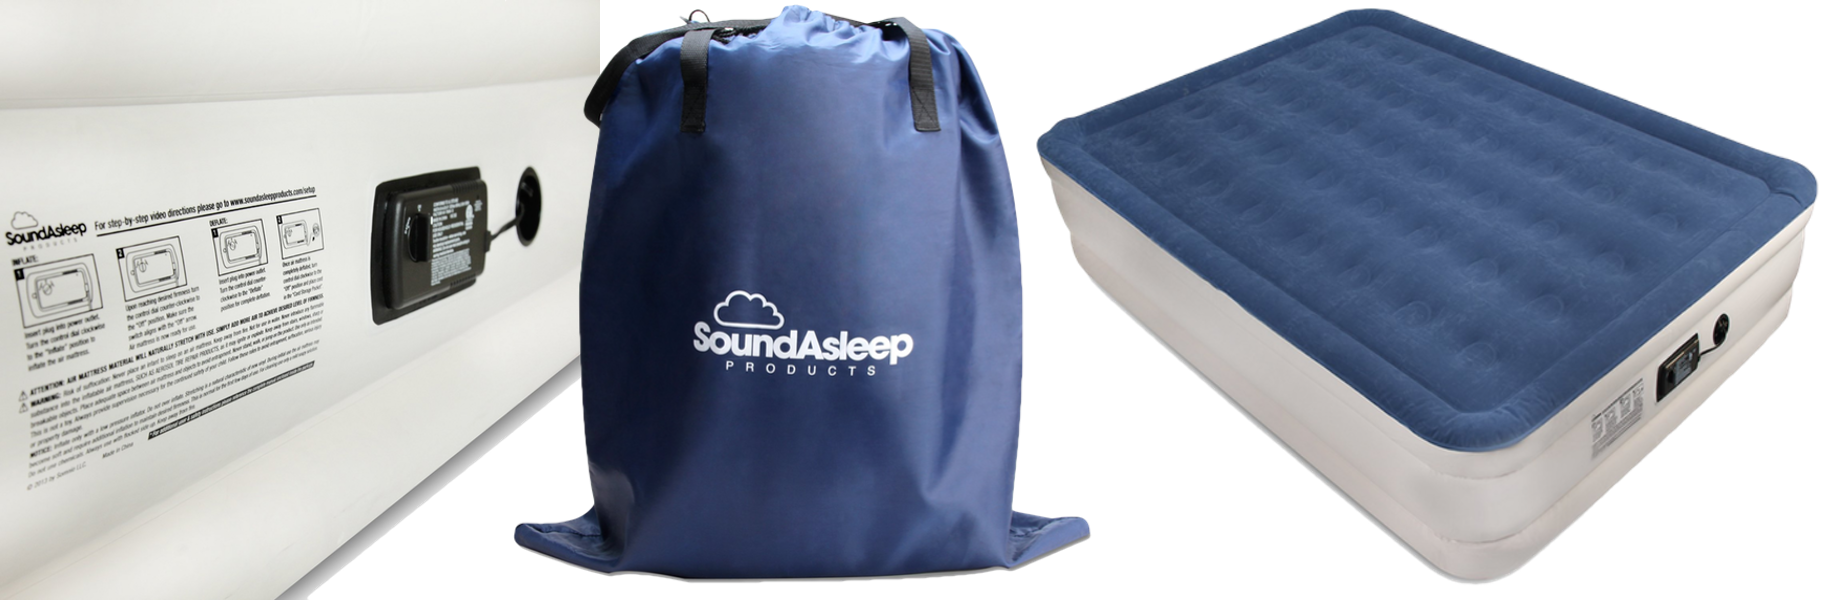 SoundAsleep best air mattress